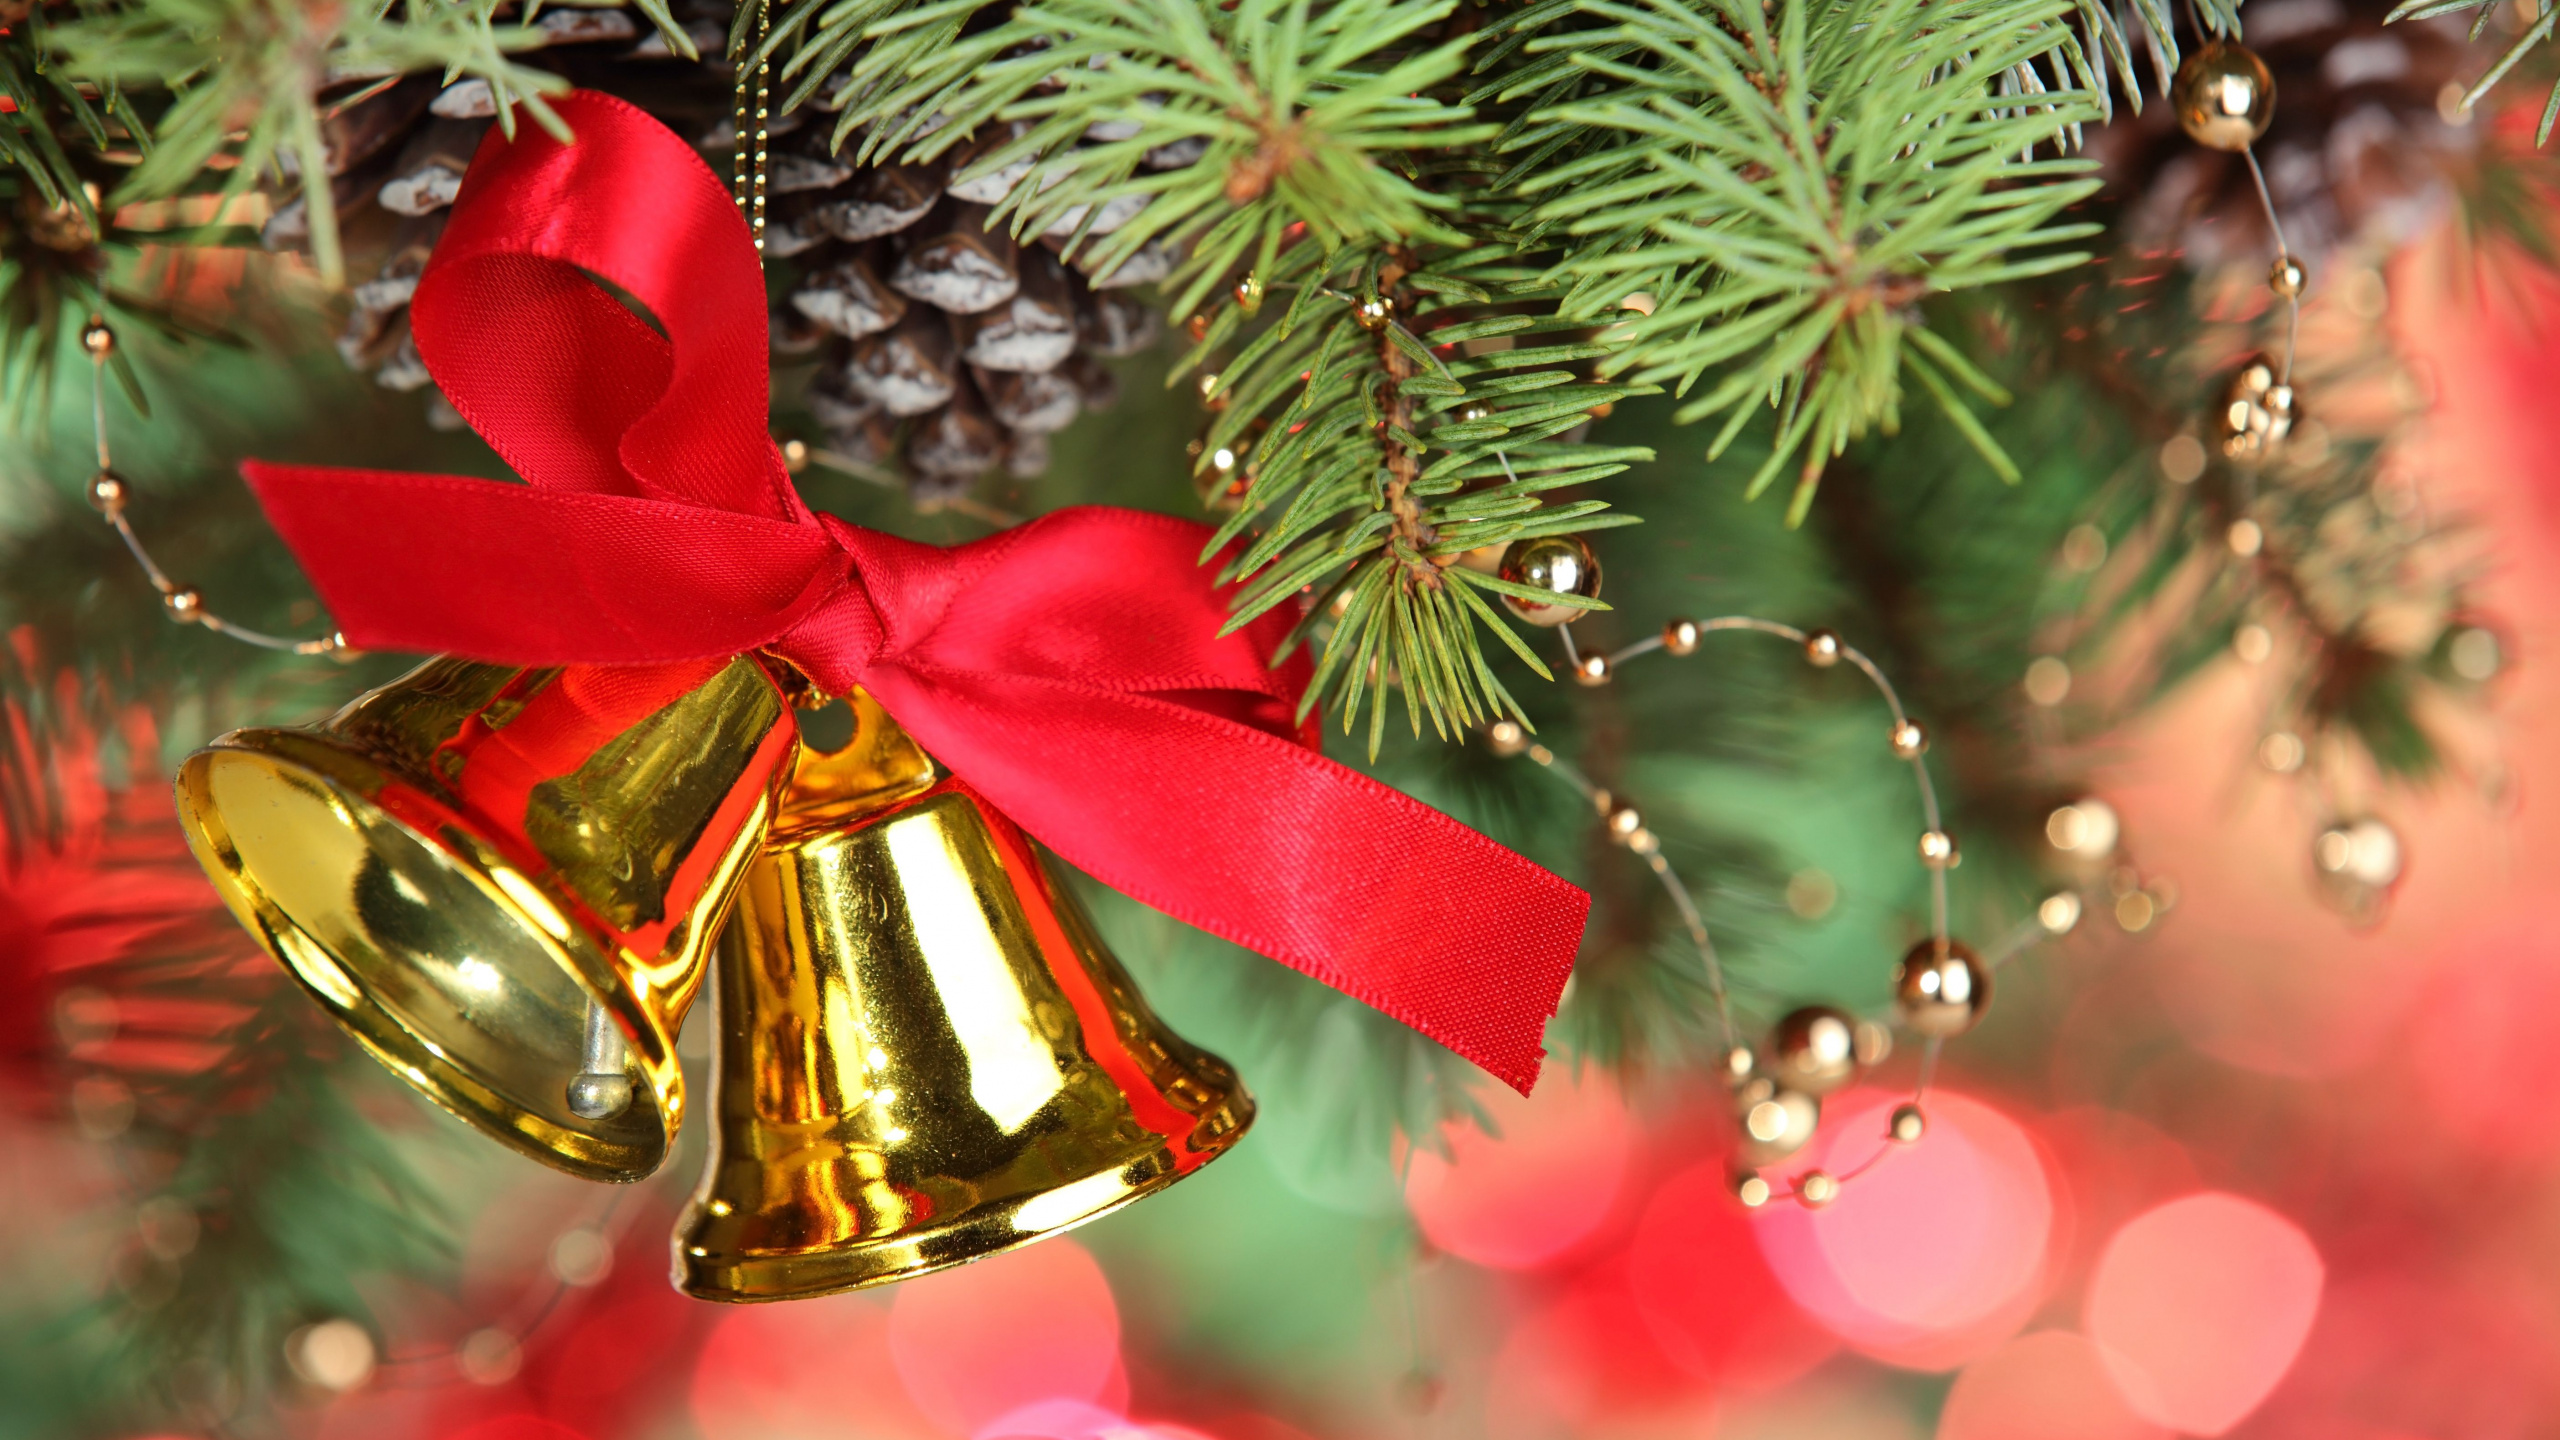 Décoration de Noël, Le Jour De Noël, Jingle Bell, Arbre de Noël, Ornement de Noël. Wallpaper in 2560x1440 Resolution